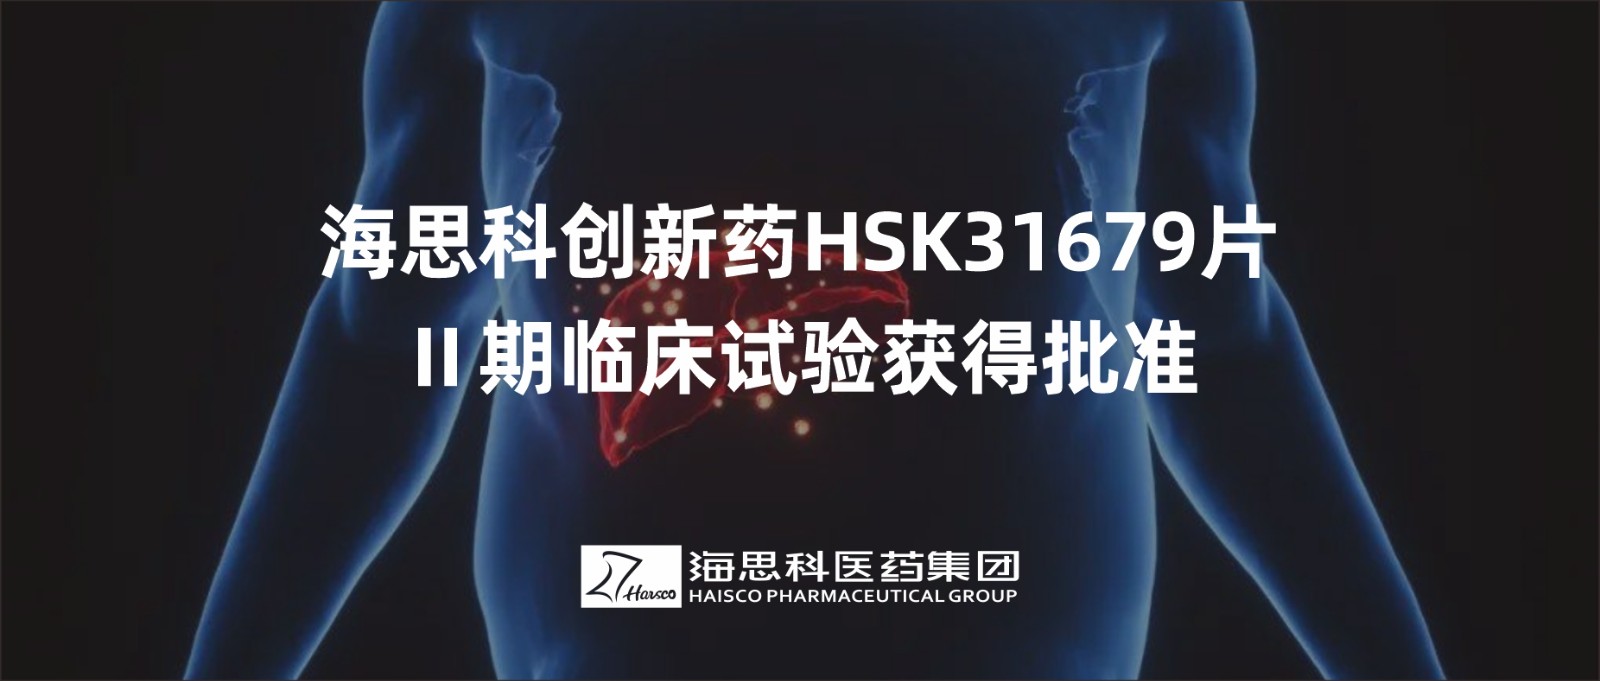 AG电投厅创新药HSK31679片Ⅱ期临床试验获得批准